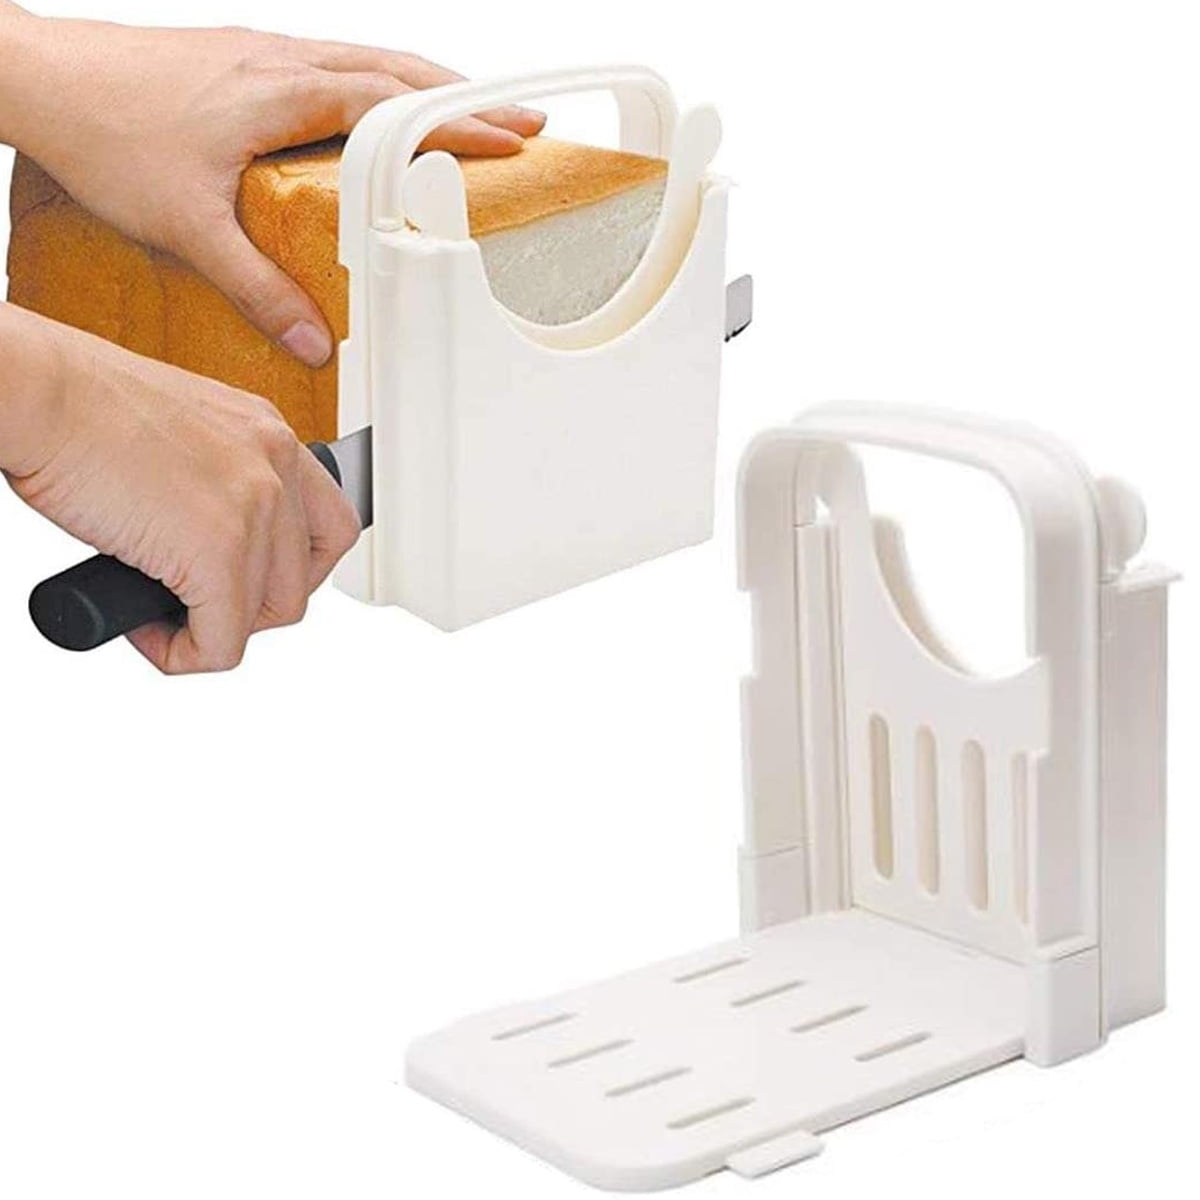 Faginey Bread Slicers, Adjustable Bagel Cutter Toast Slicer Loaf Bread Cutter Sandwich Slicing Tool Folding Bread Maker Kitchen Appliance Gift for